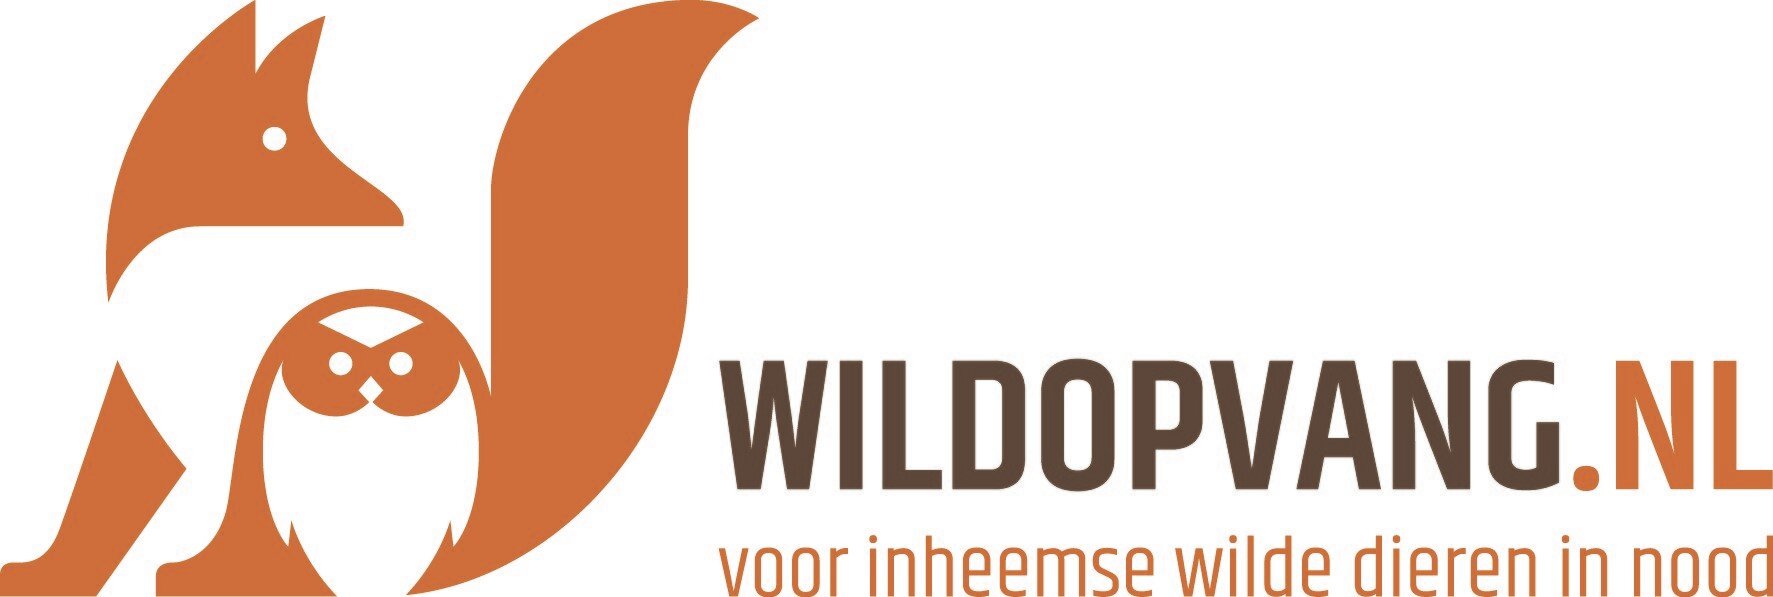 Wildopvang.nl